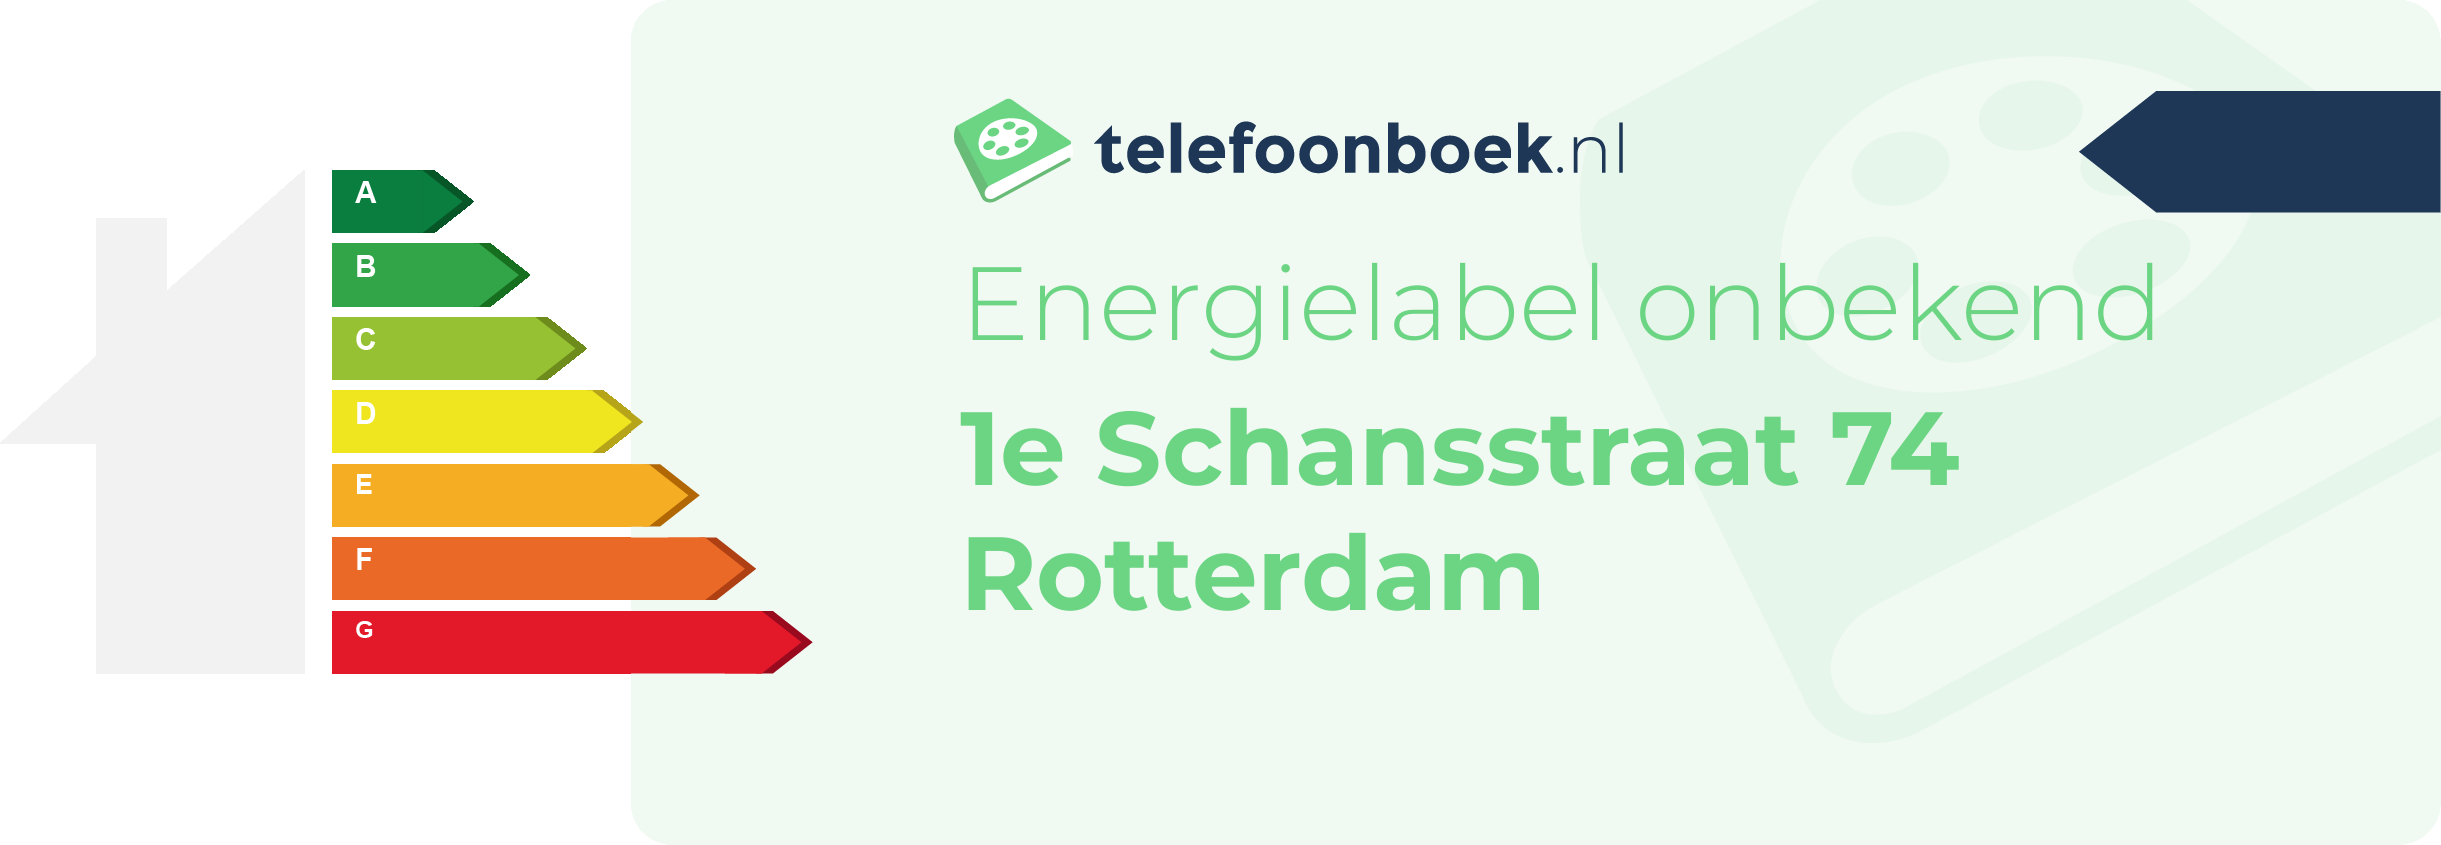 Energielabel 1e Schansstraat 74 Rotterdam